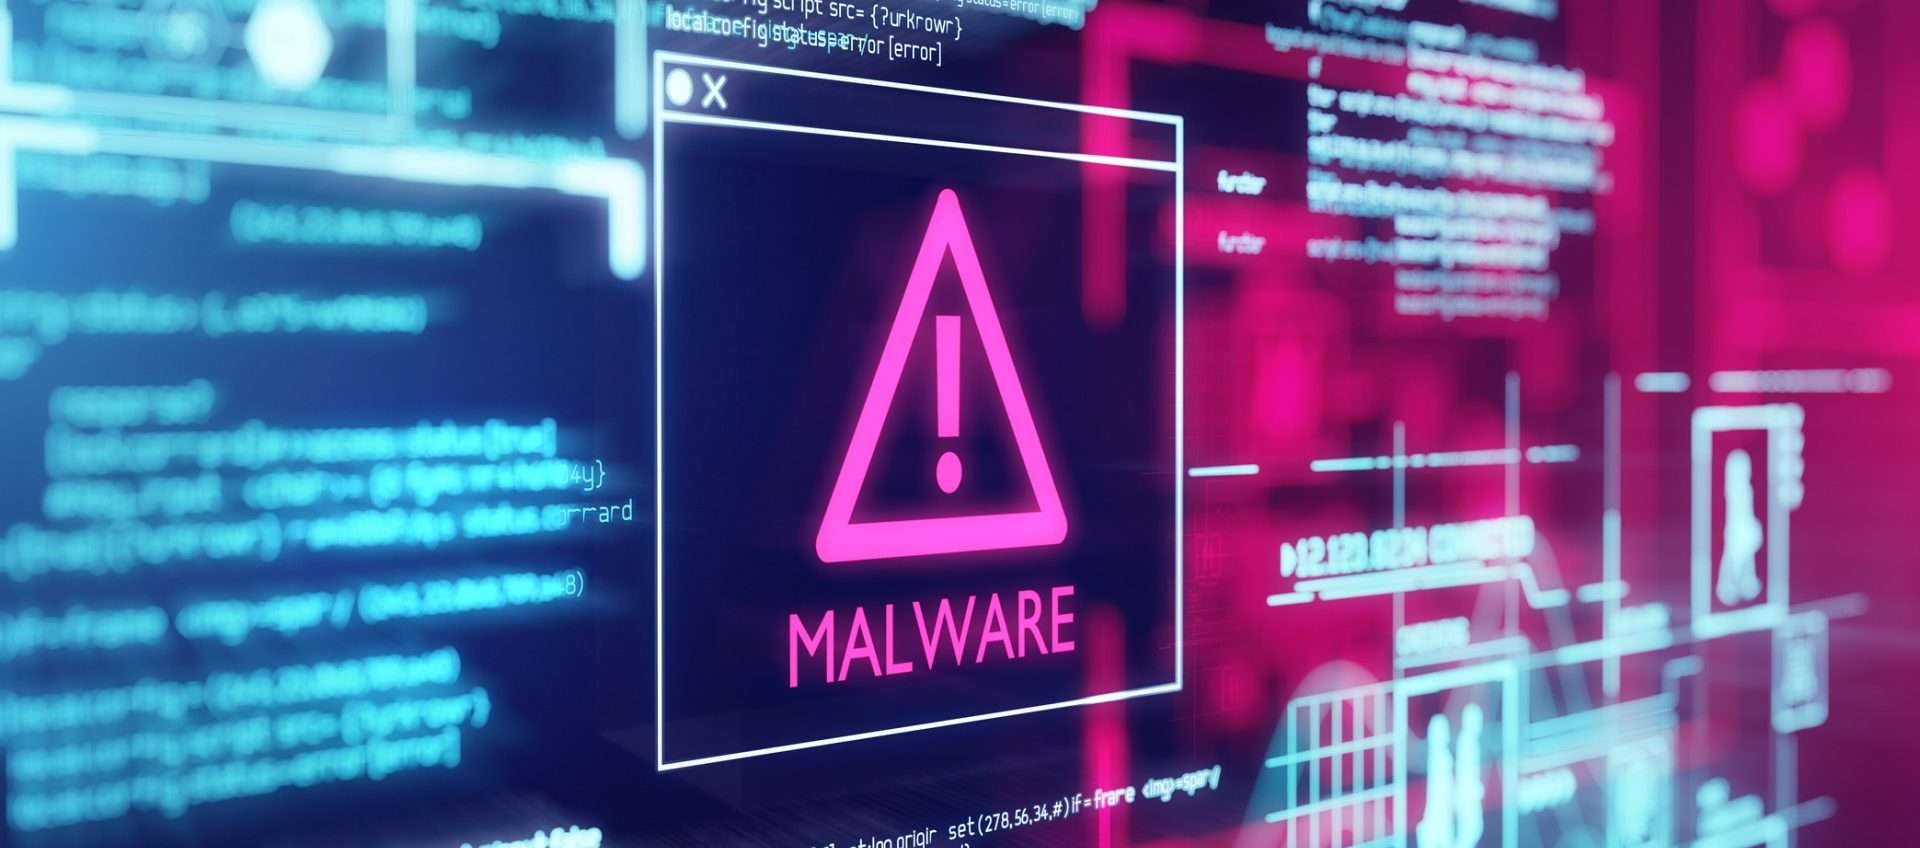 Gruppo di hacker cinesi utilizza un'app di messaggistica per diffondere malware